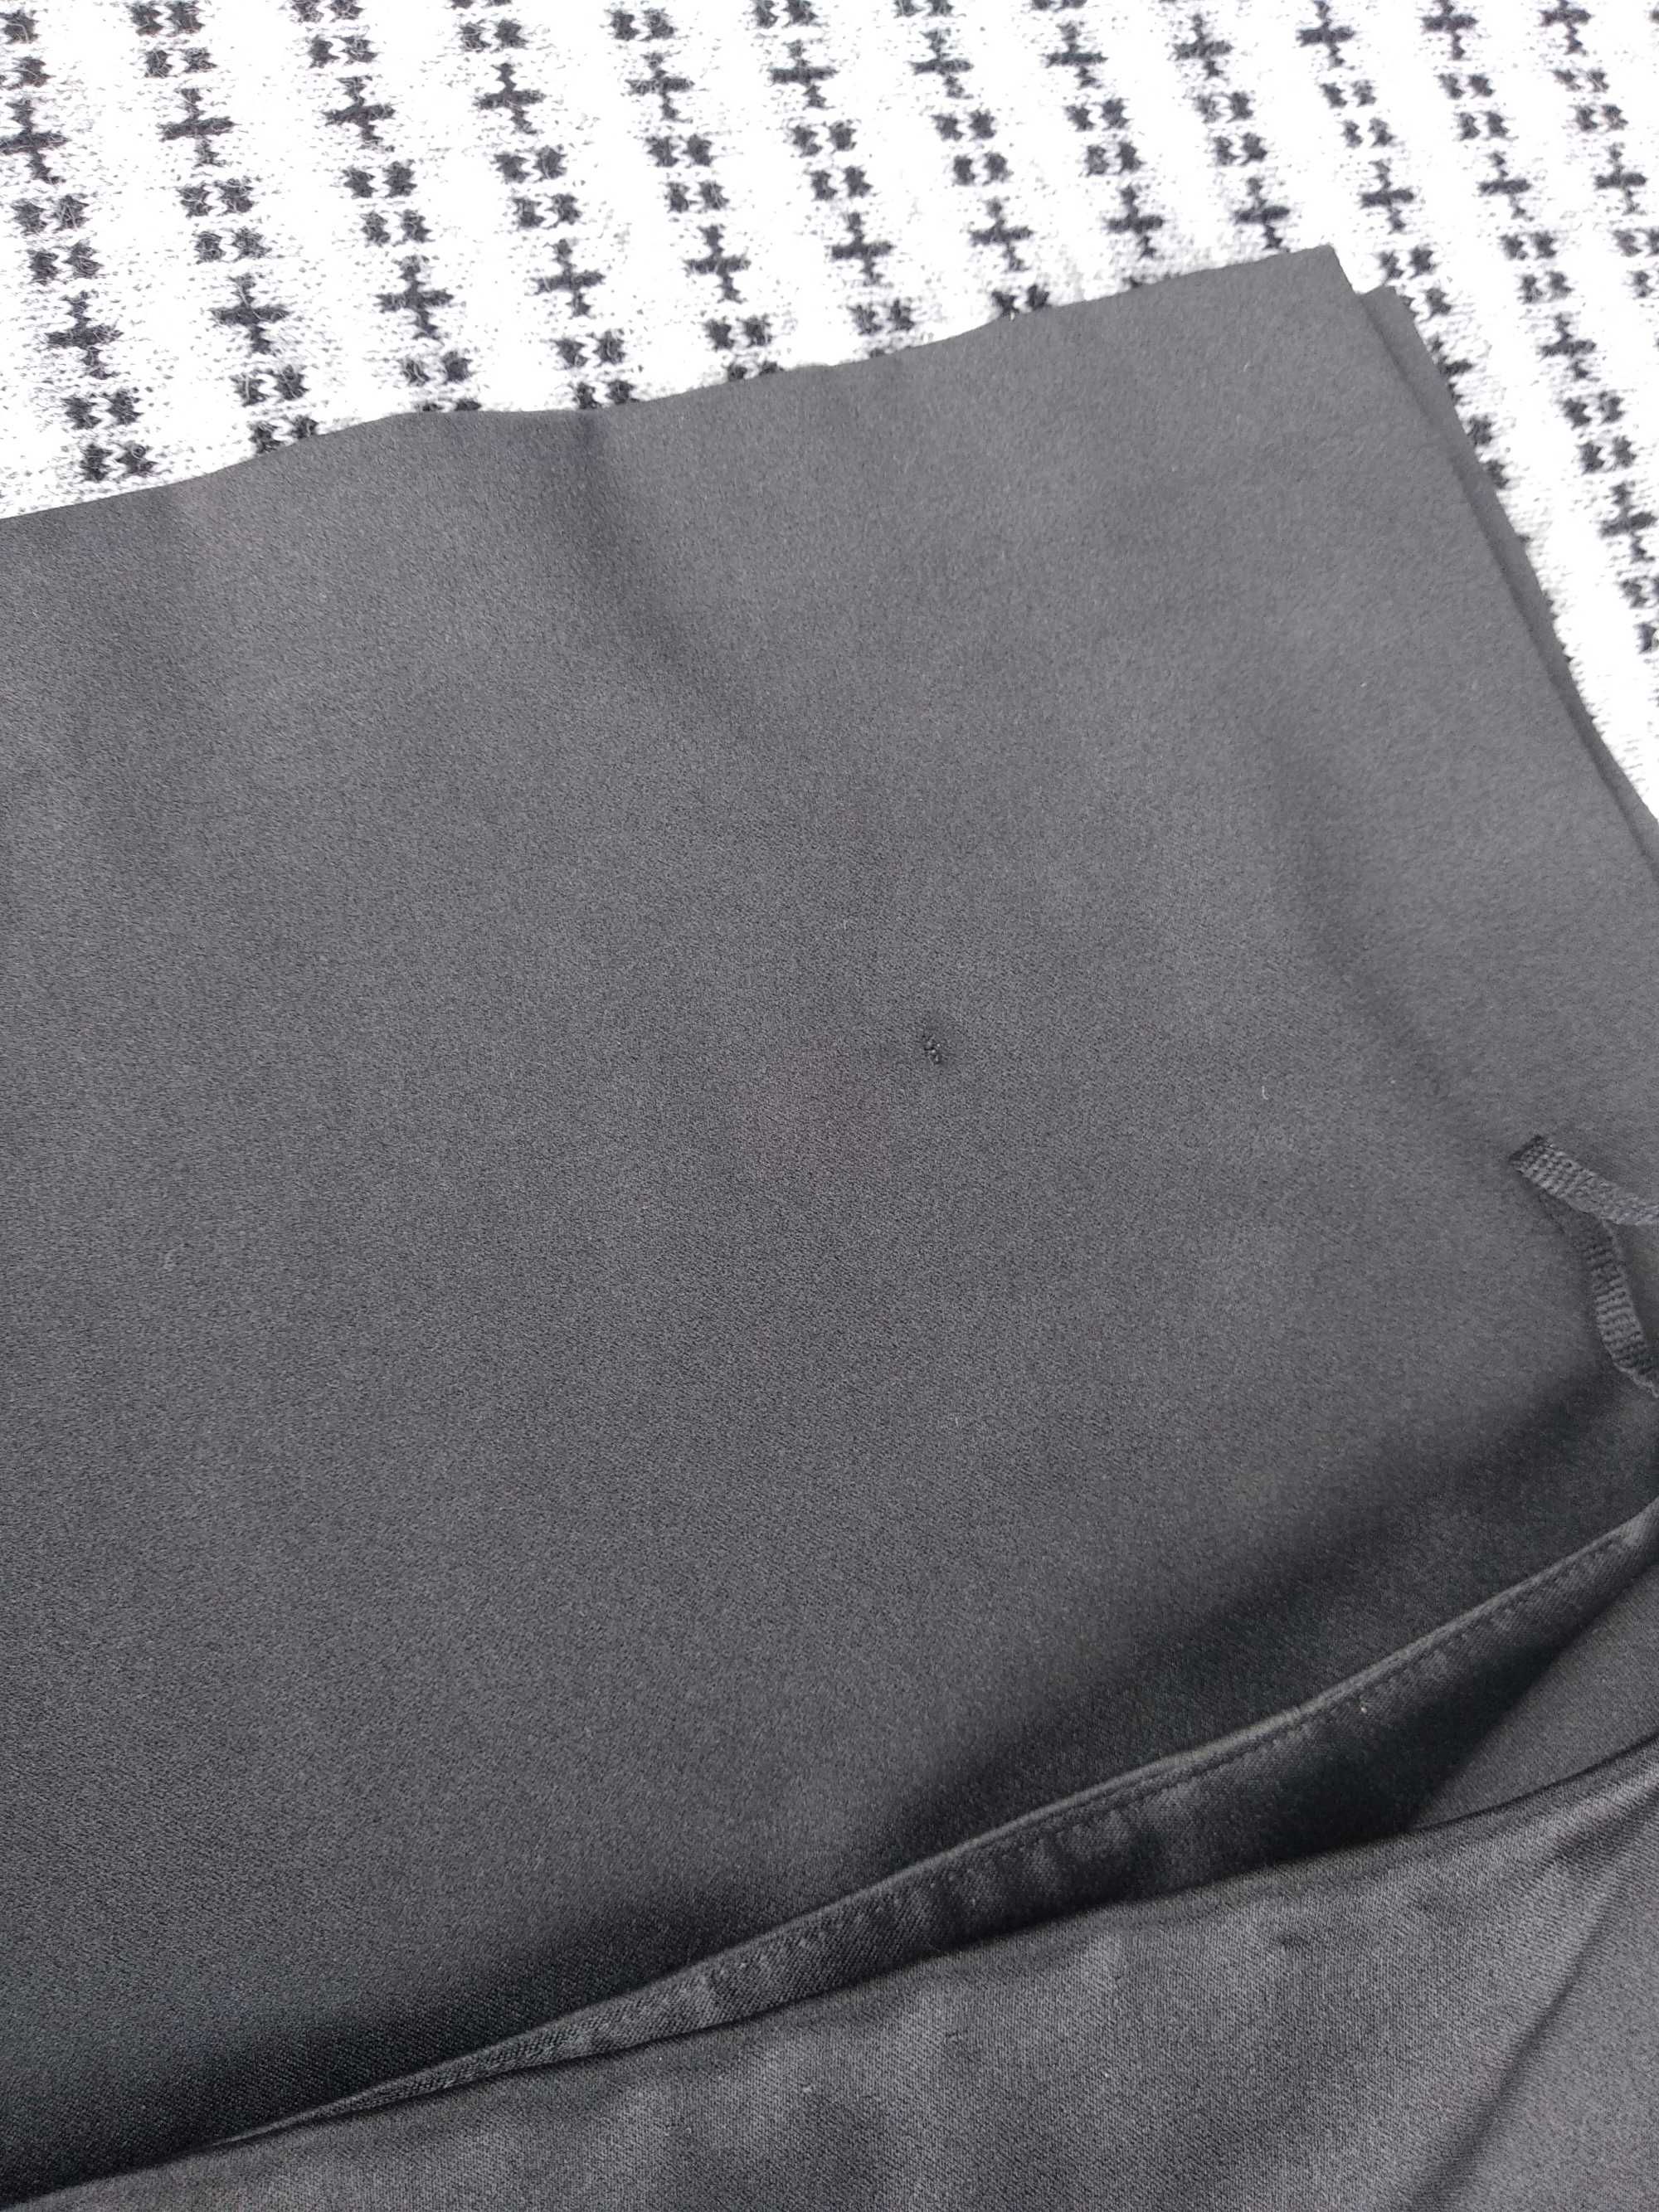 Spódnica czarna z rozcięciami r.36/38 new look